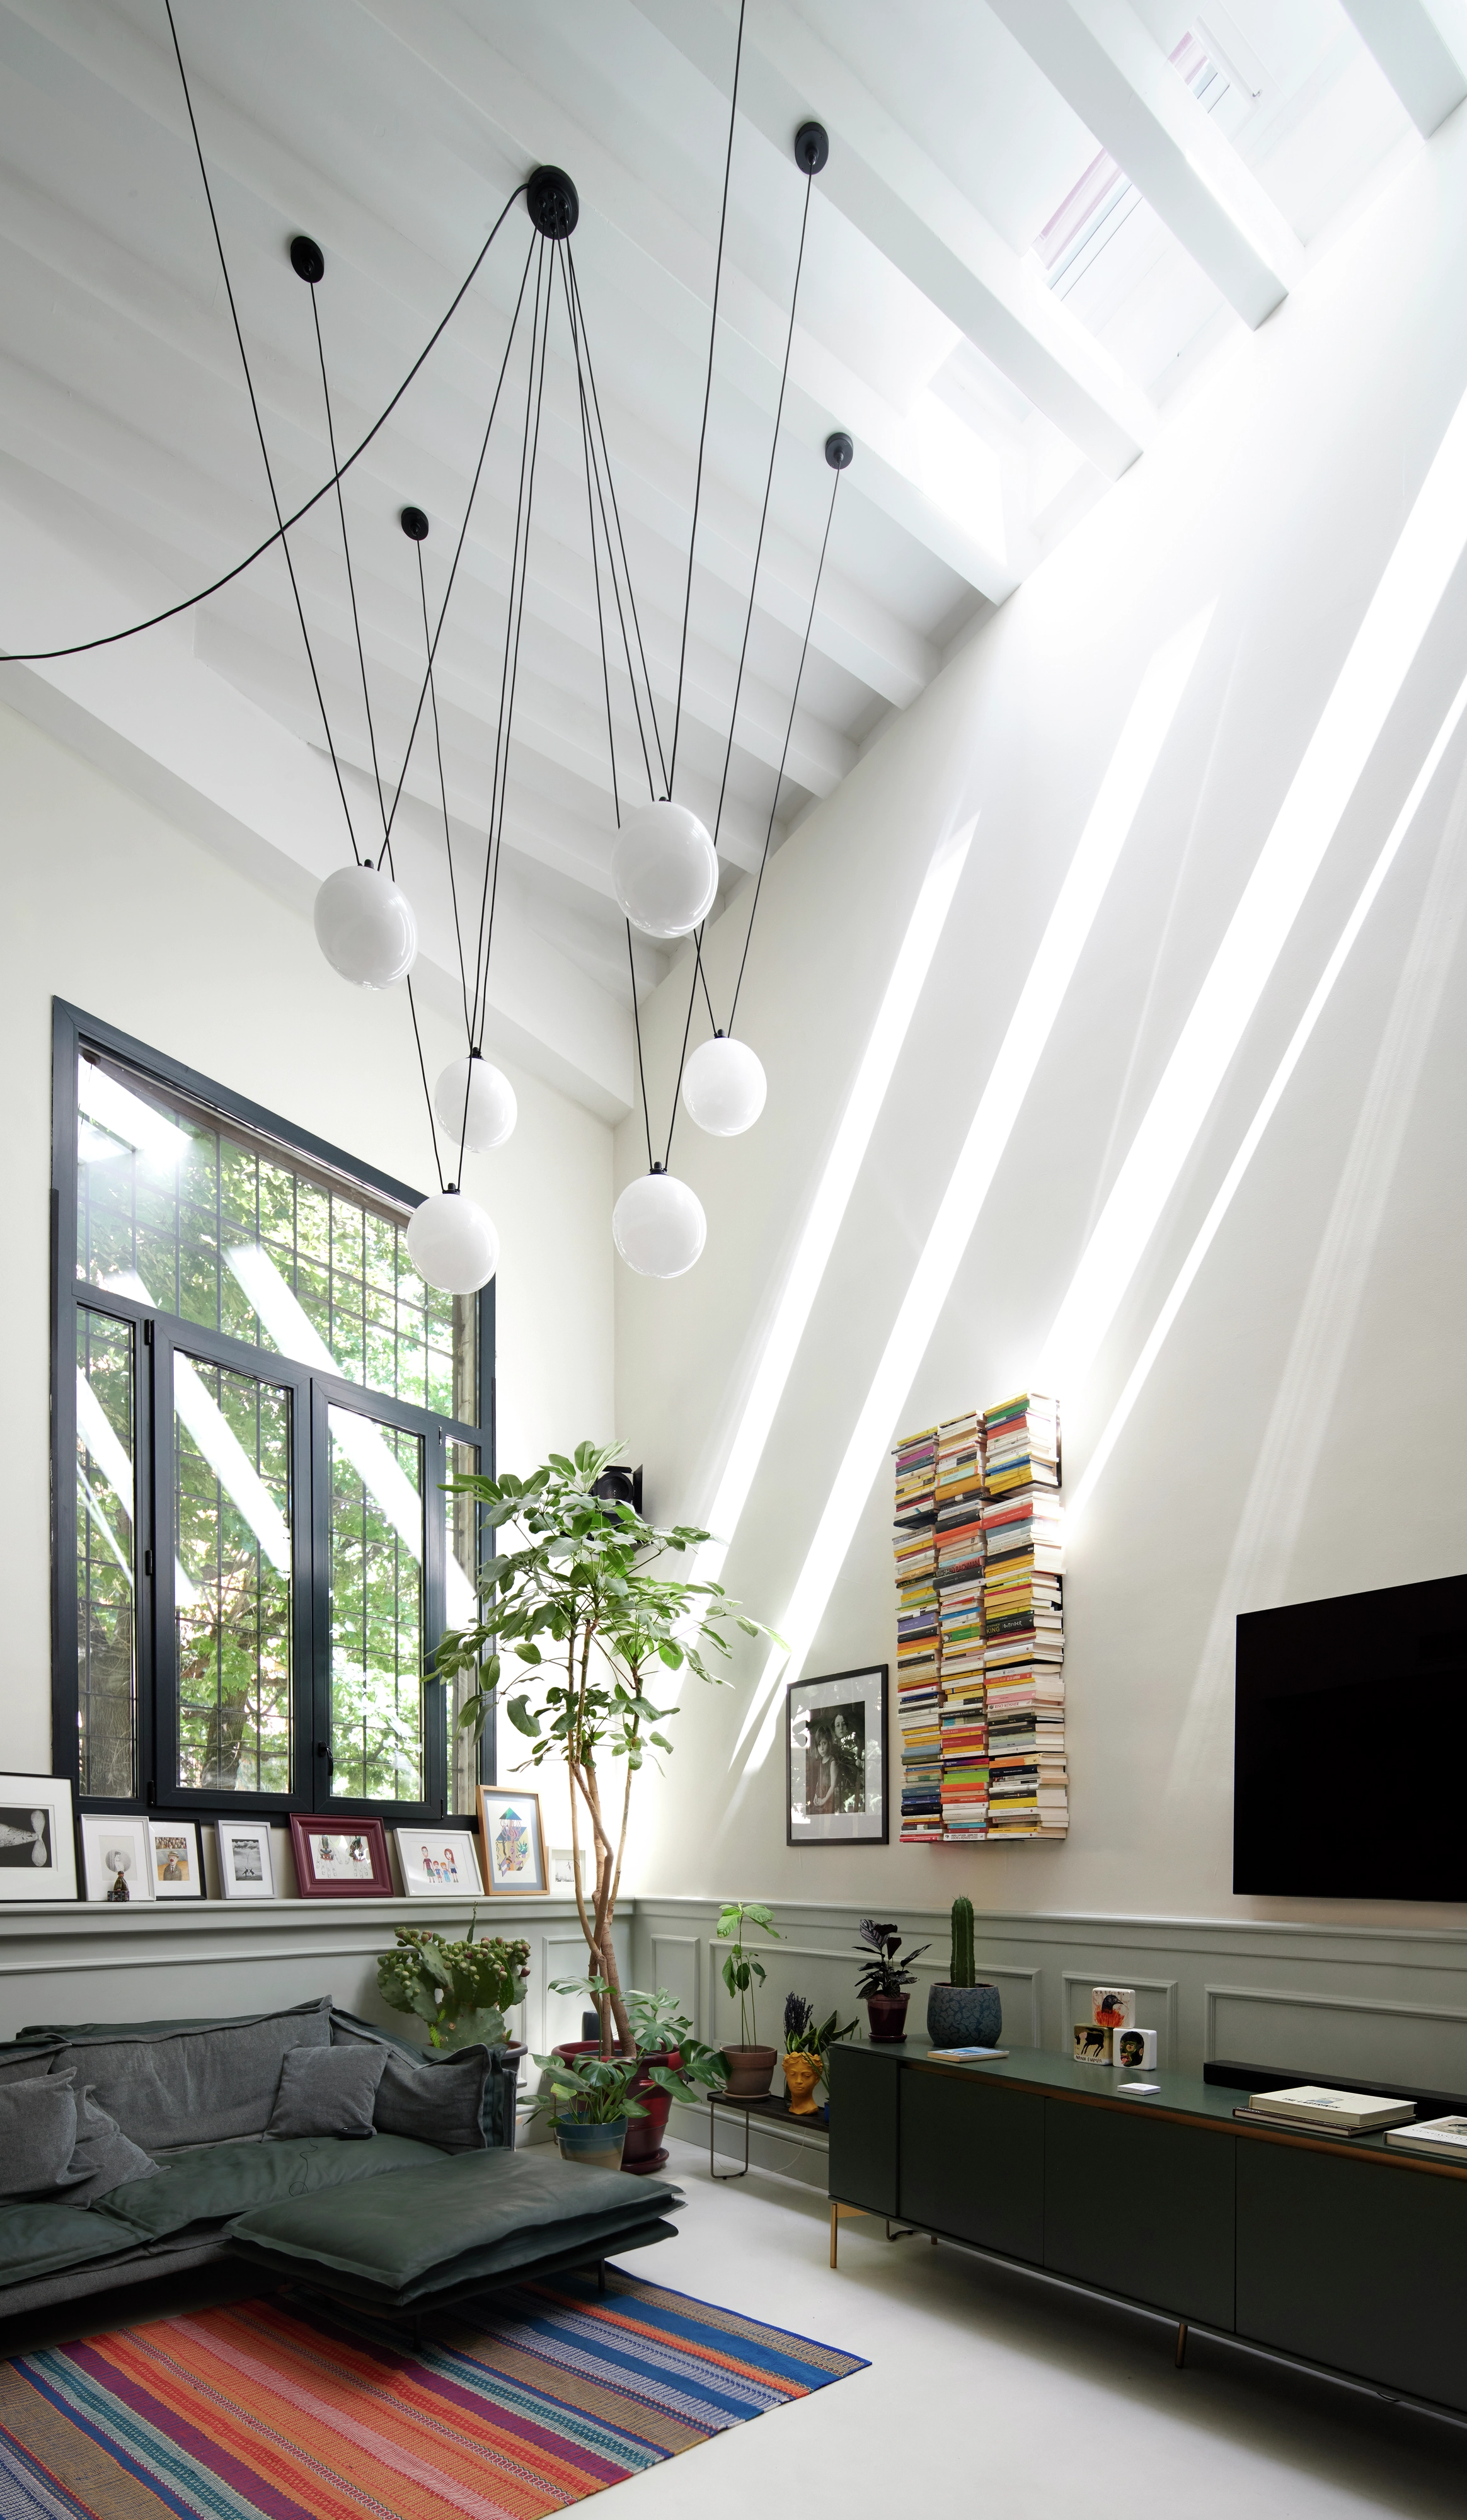 Salon lumineux avec des fenêtres de toit VELUX, décoration moderne et lumières sphériques suspendues.